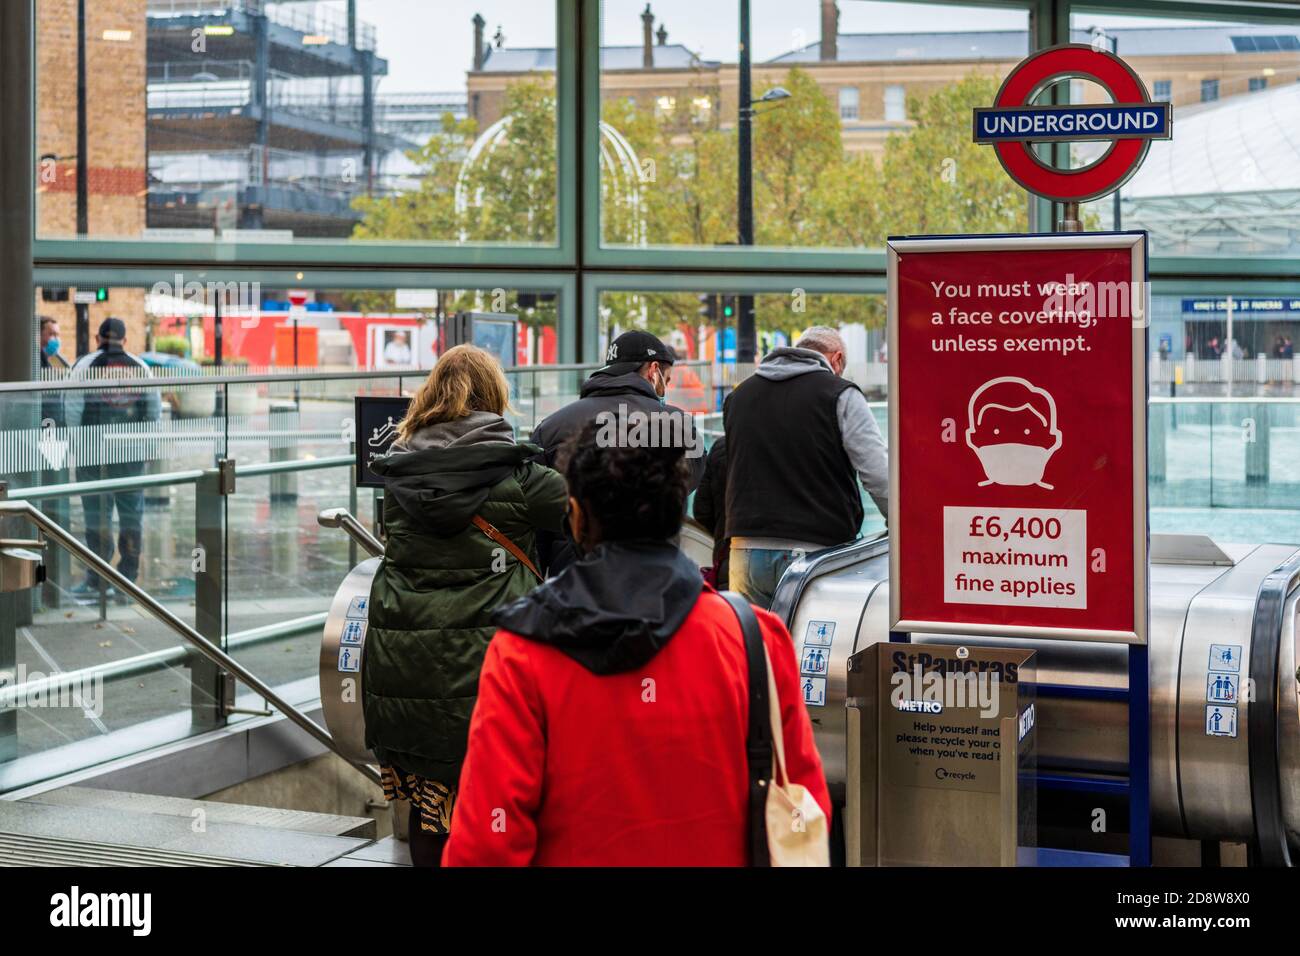 London Transport Mask Enforcement - bis zu £6500 Geldstrafen für das Tragen einer Gesichtsabdeckung auf der Londoner U-Bahn und Bahnhöfen. Stockfoto